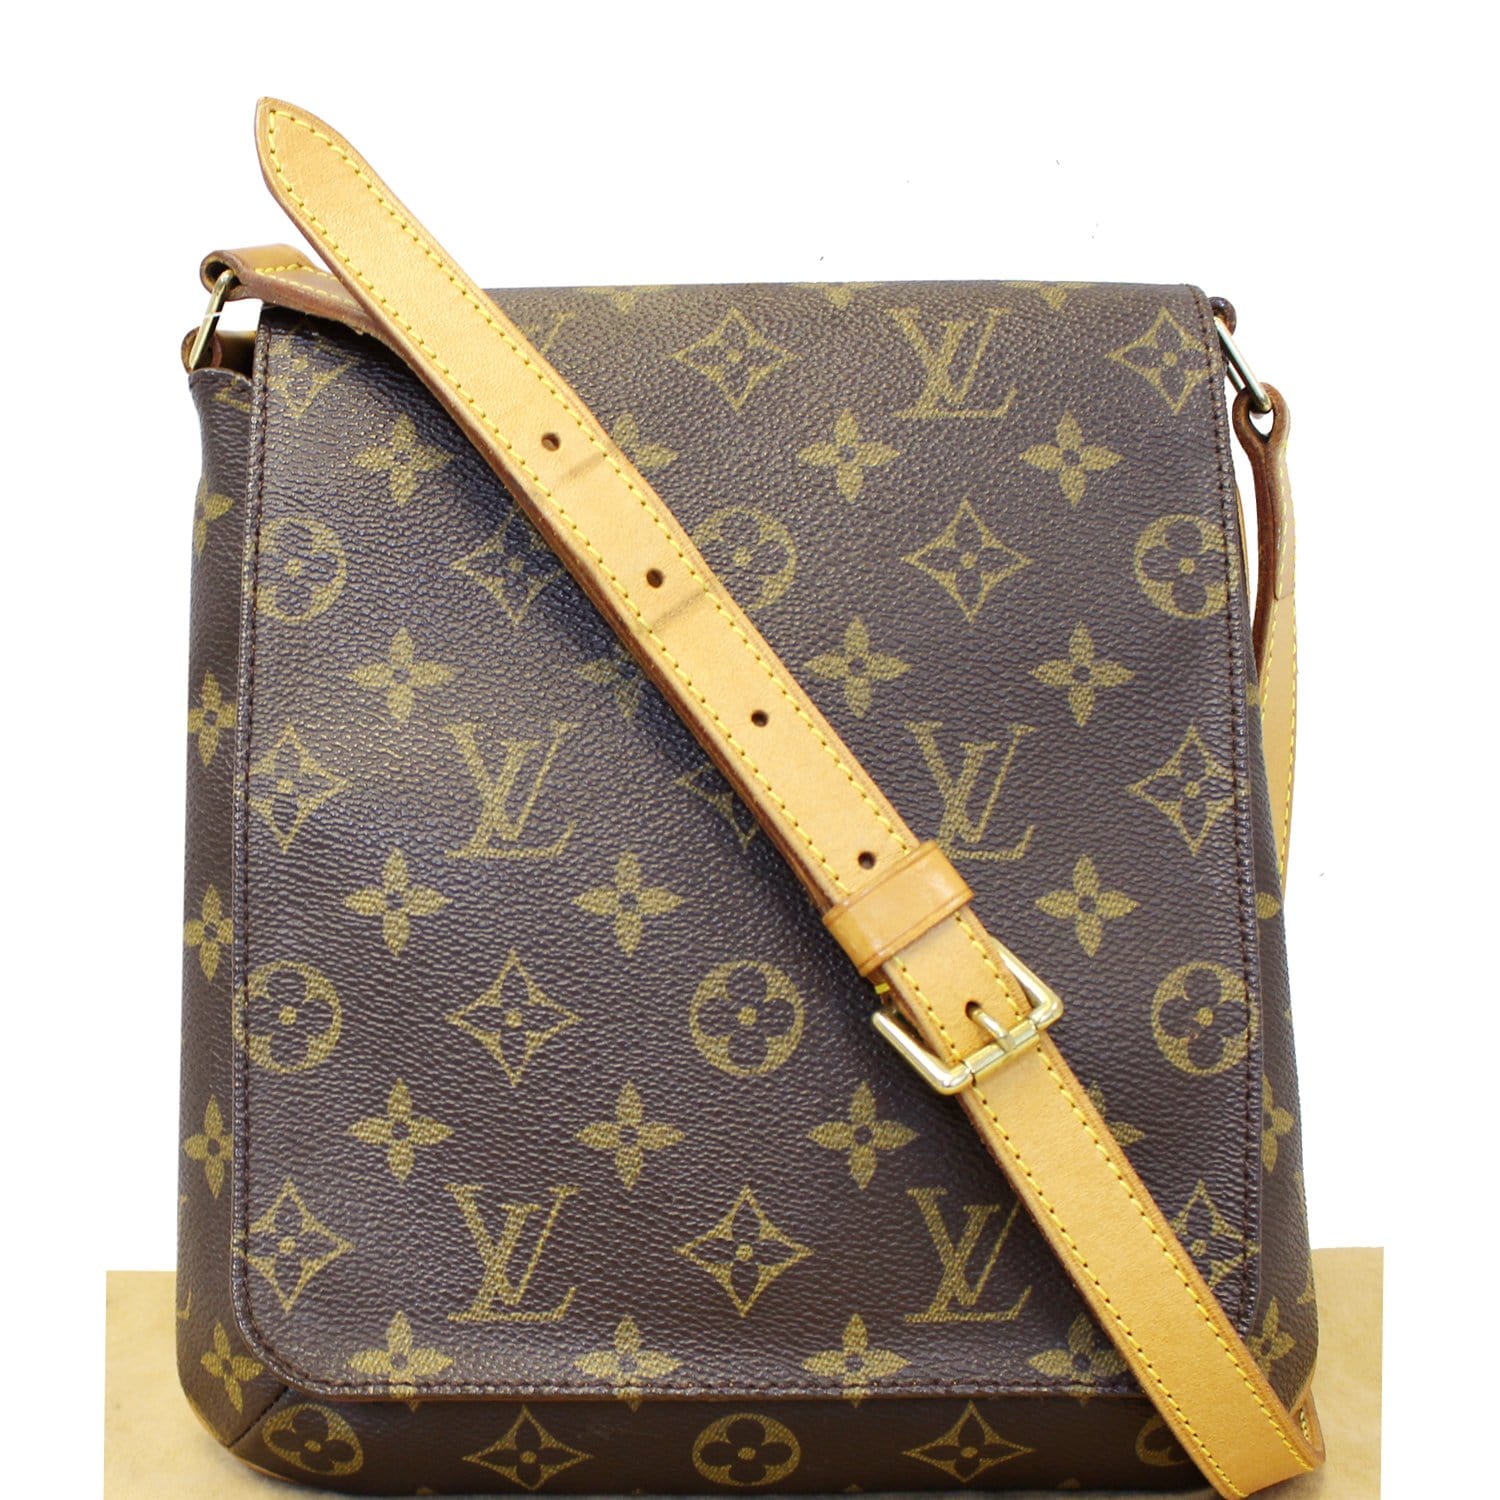 Authentic Louis Vuitton White Monogram Charms Musette Shoulder Bag